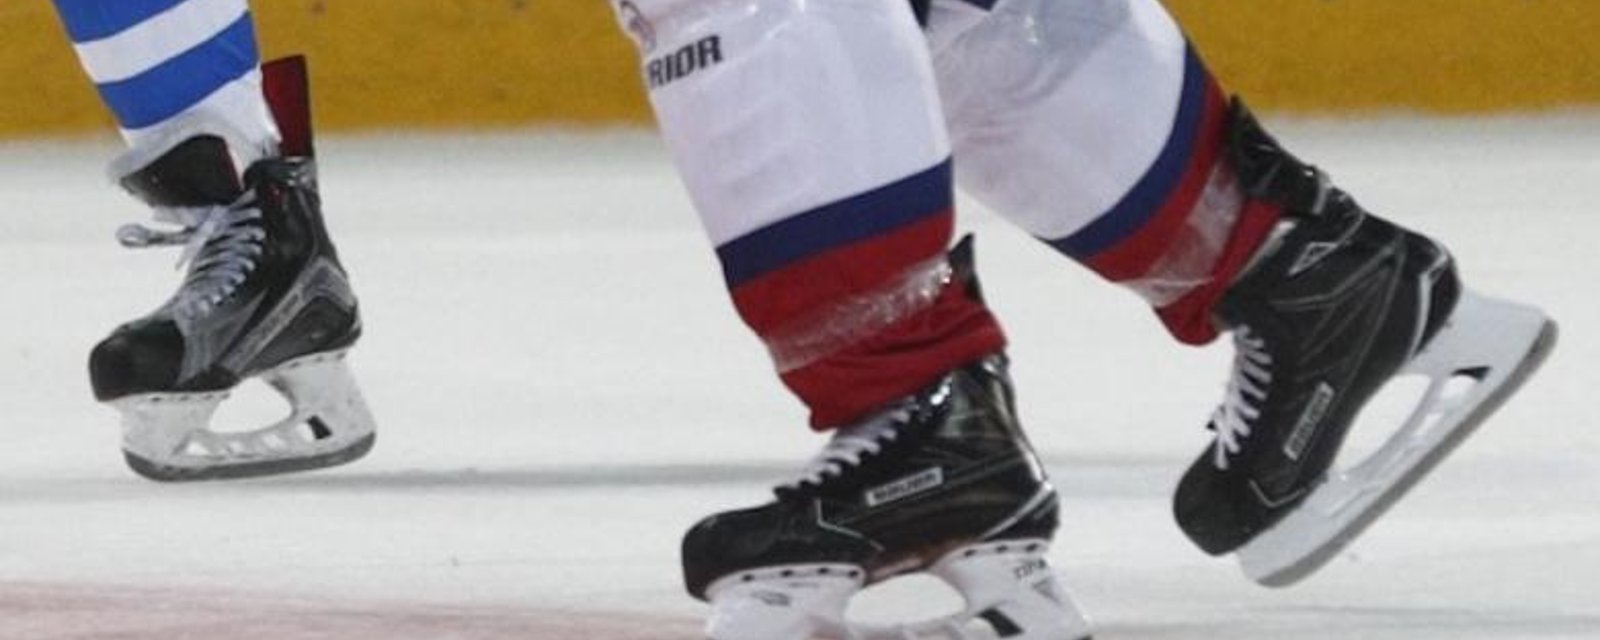 Un joueur d'hockey acquitté d'accusations d'agression sexuelle 